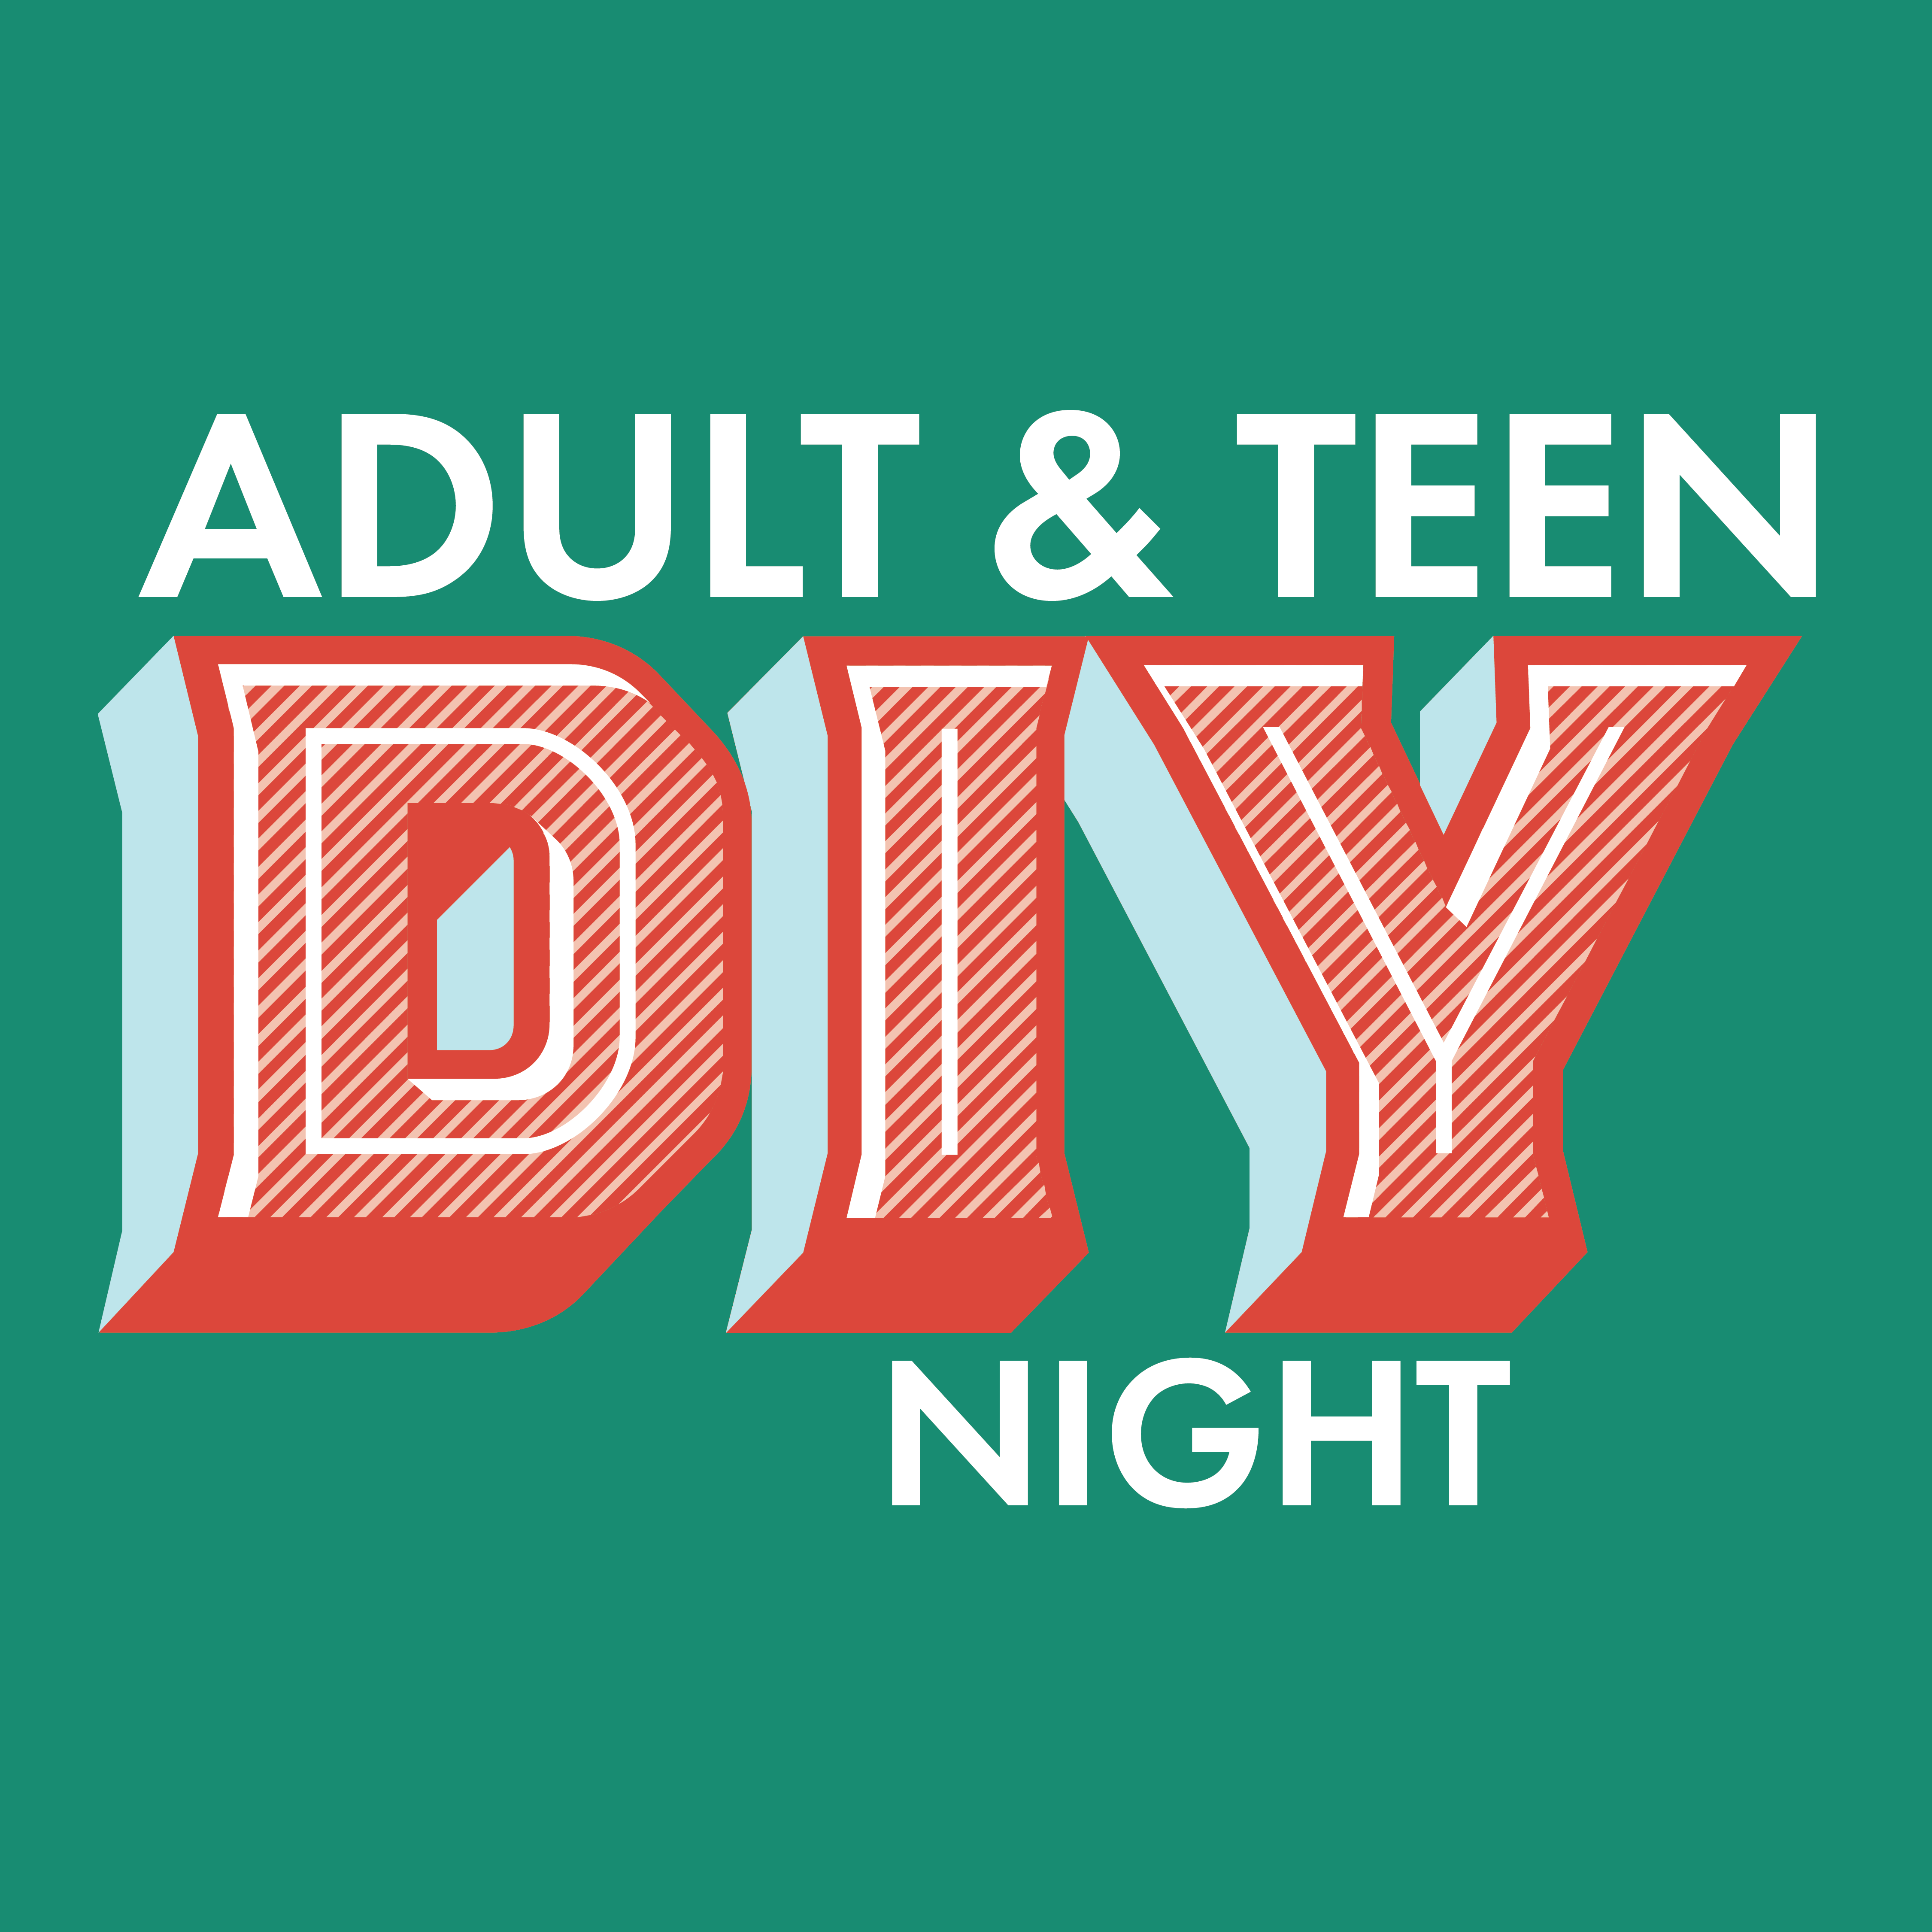 ADult & Teen DIY Night